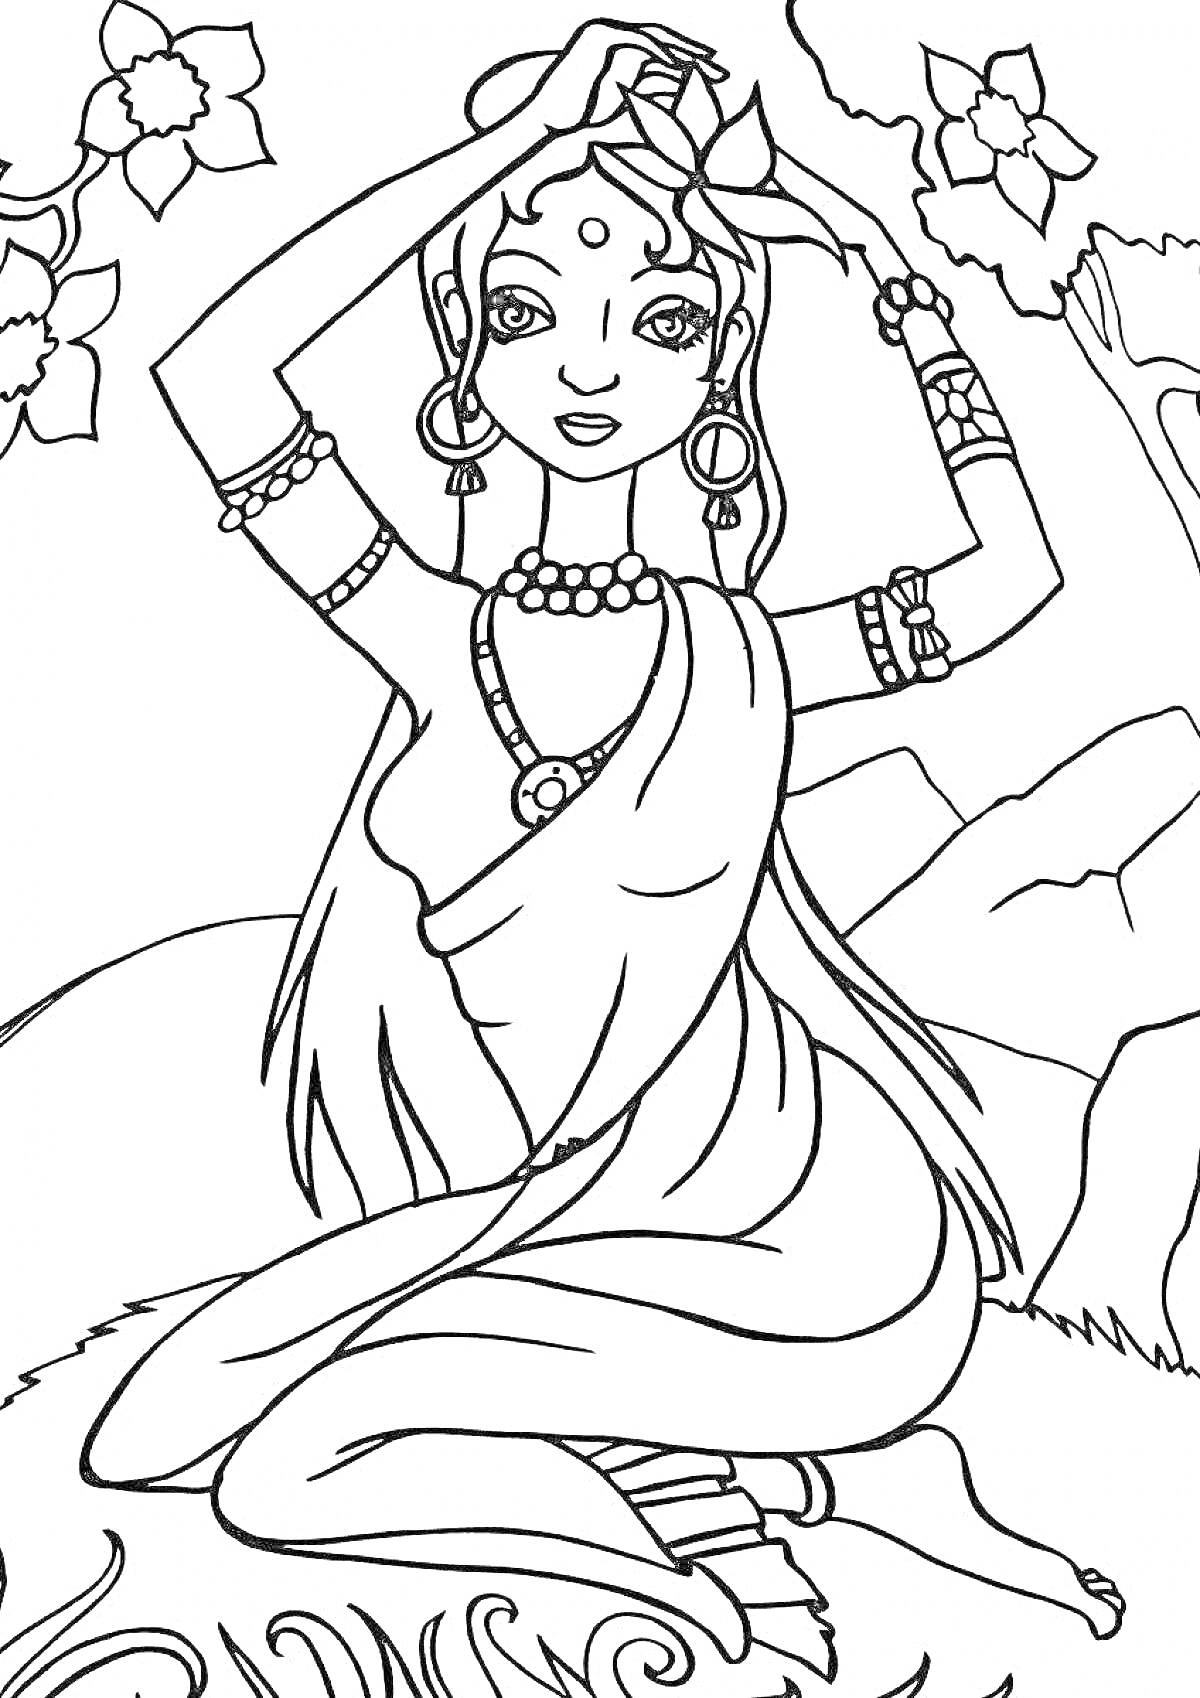 Раскраска Индийская женщина с цветами на фоне деревьев и гор. Женщина украшена бижутерией и одета в традиционную одежду